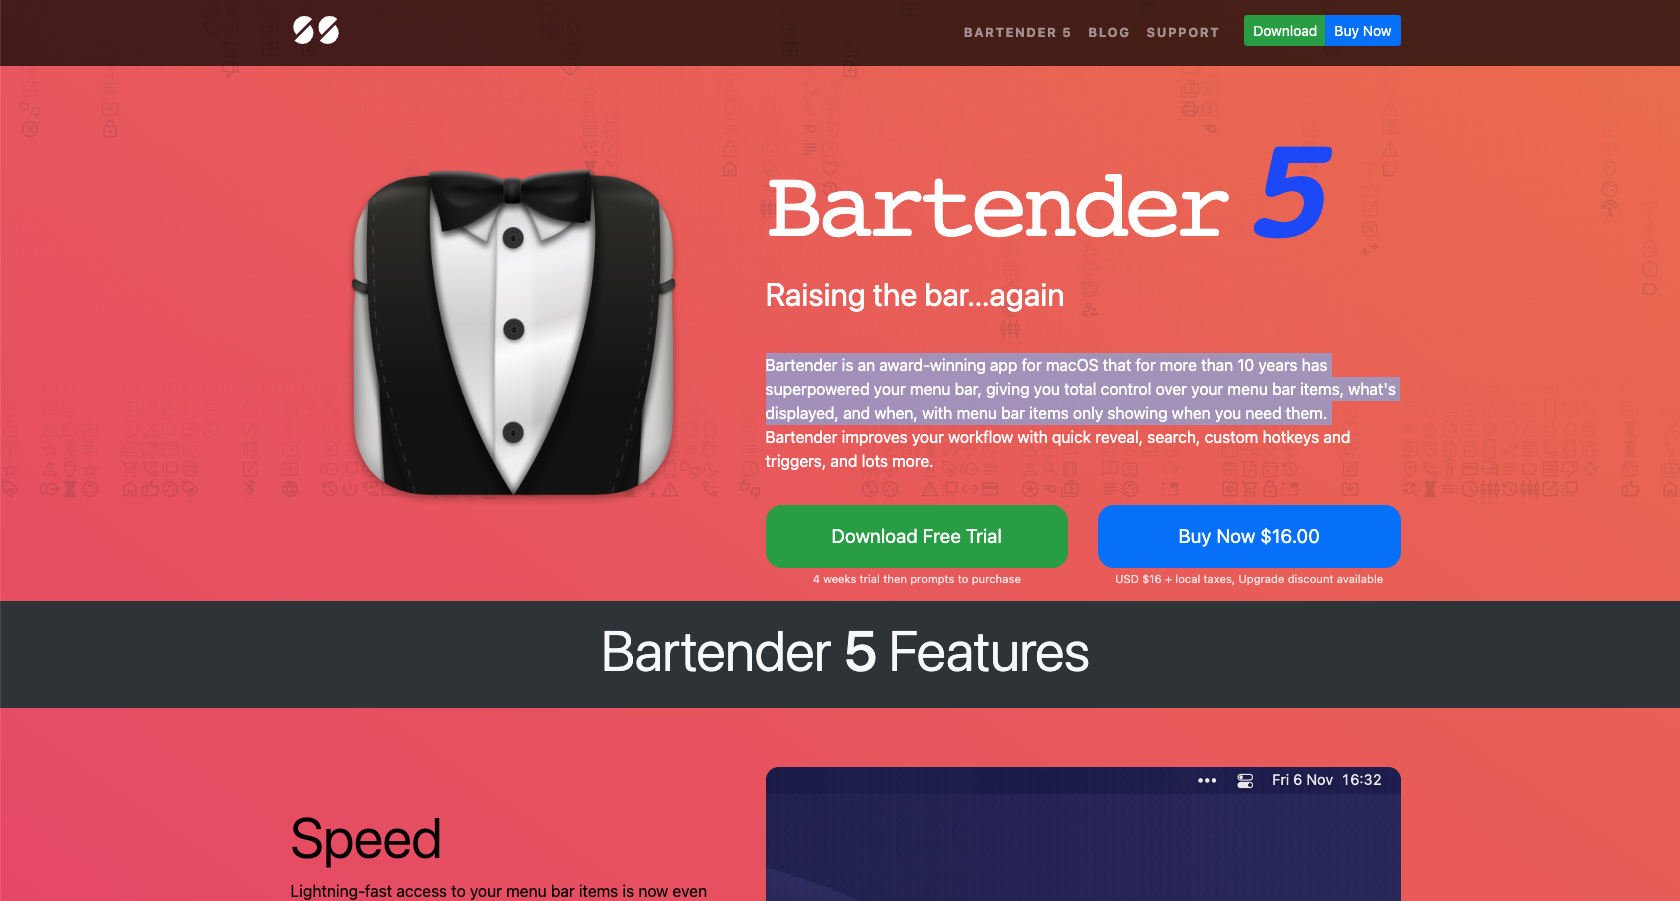 Bartender 5